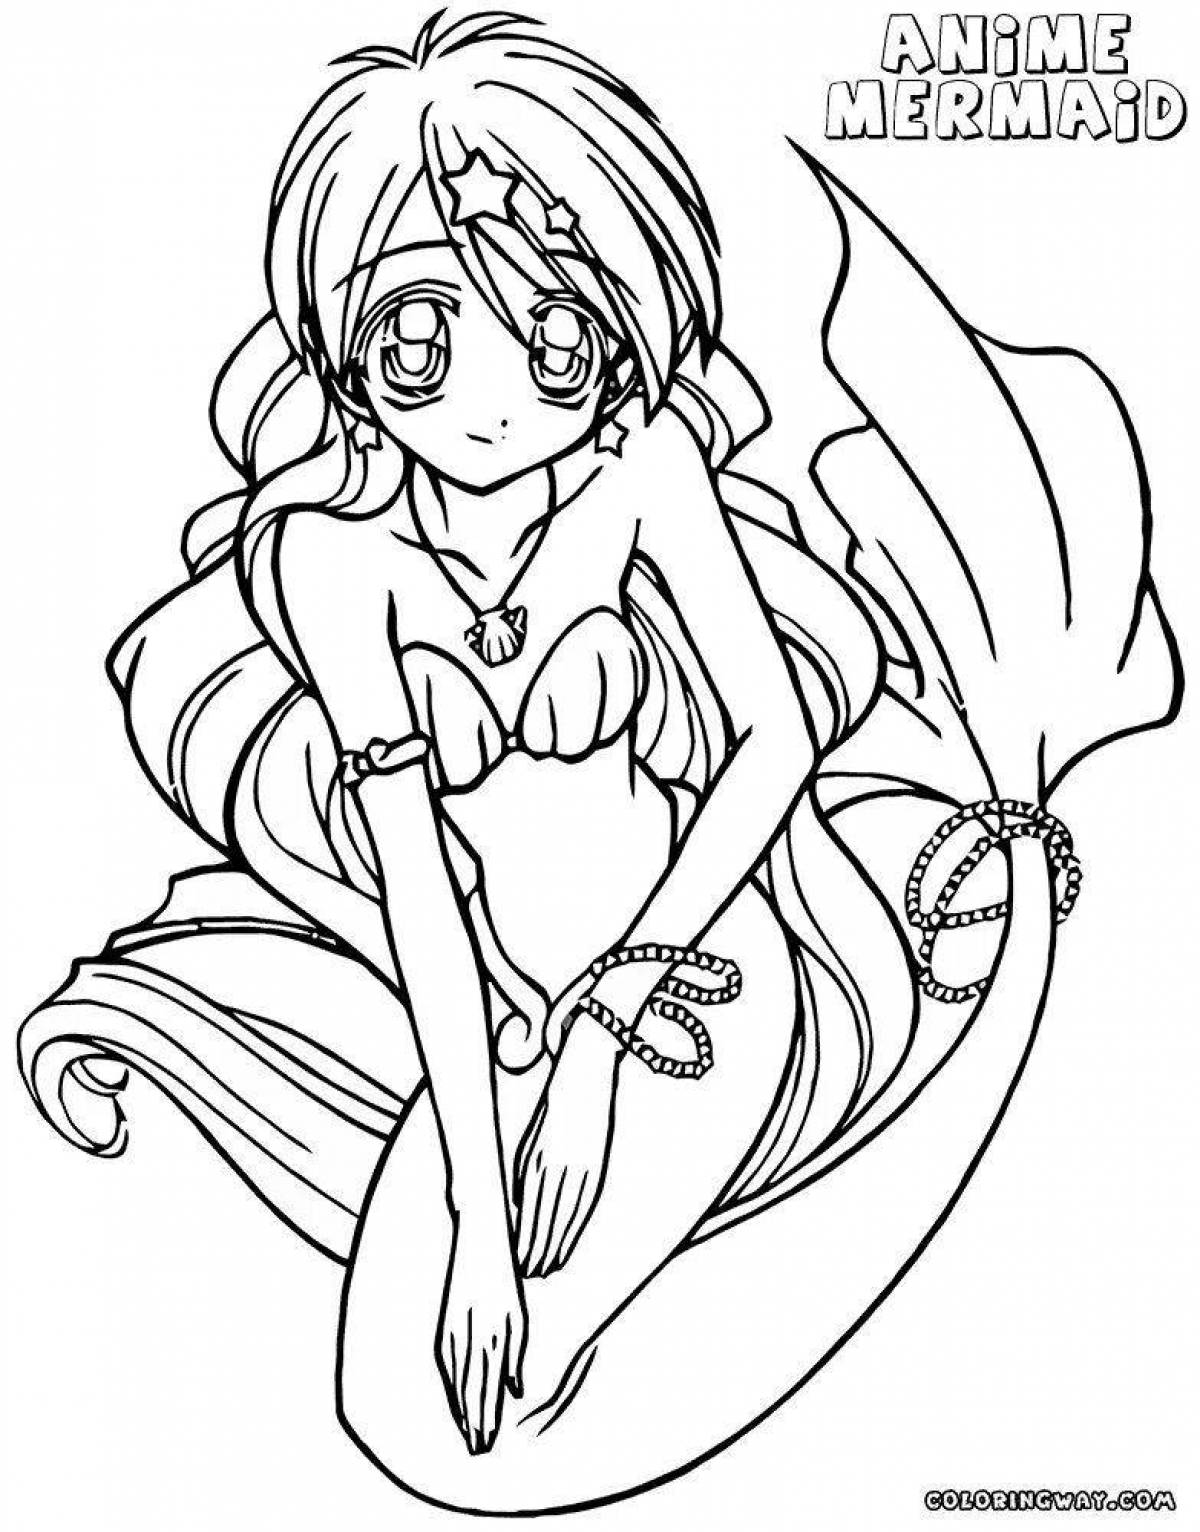 Exquisite coloring anime mermaid